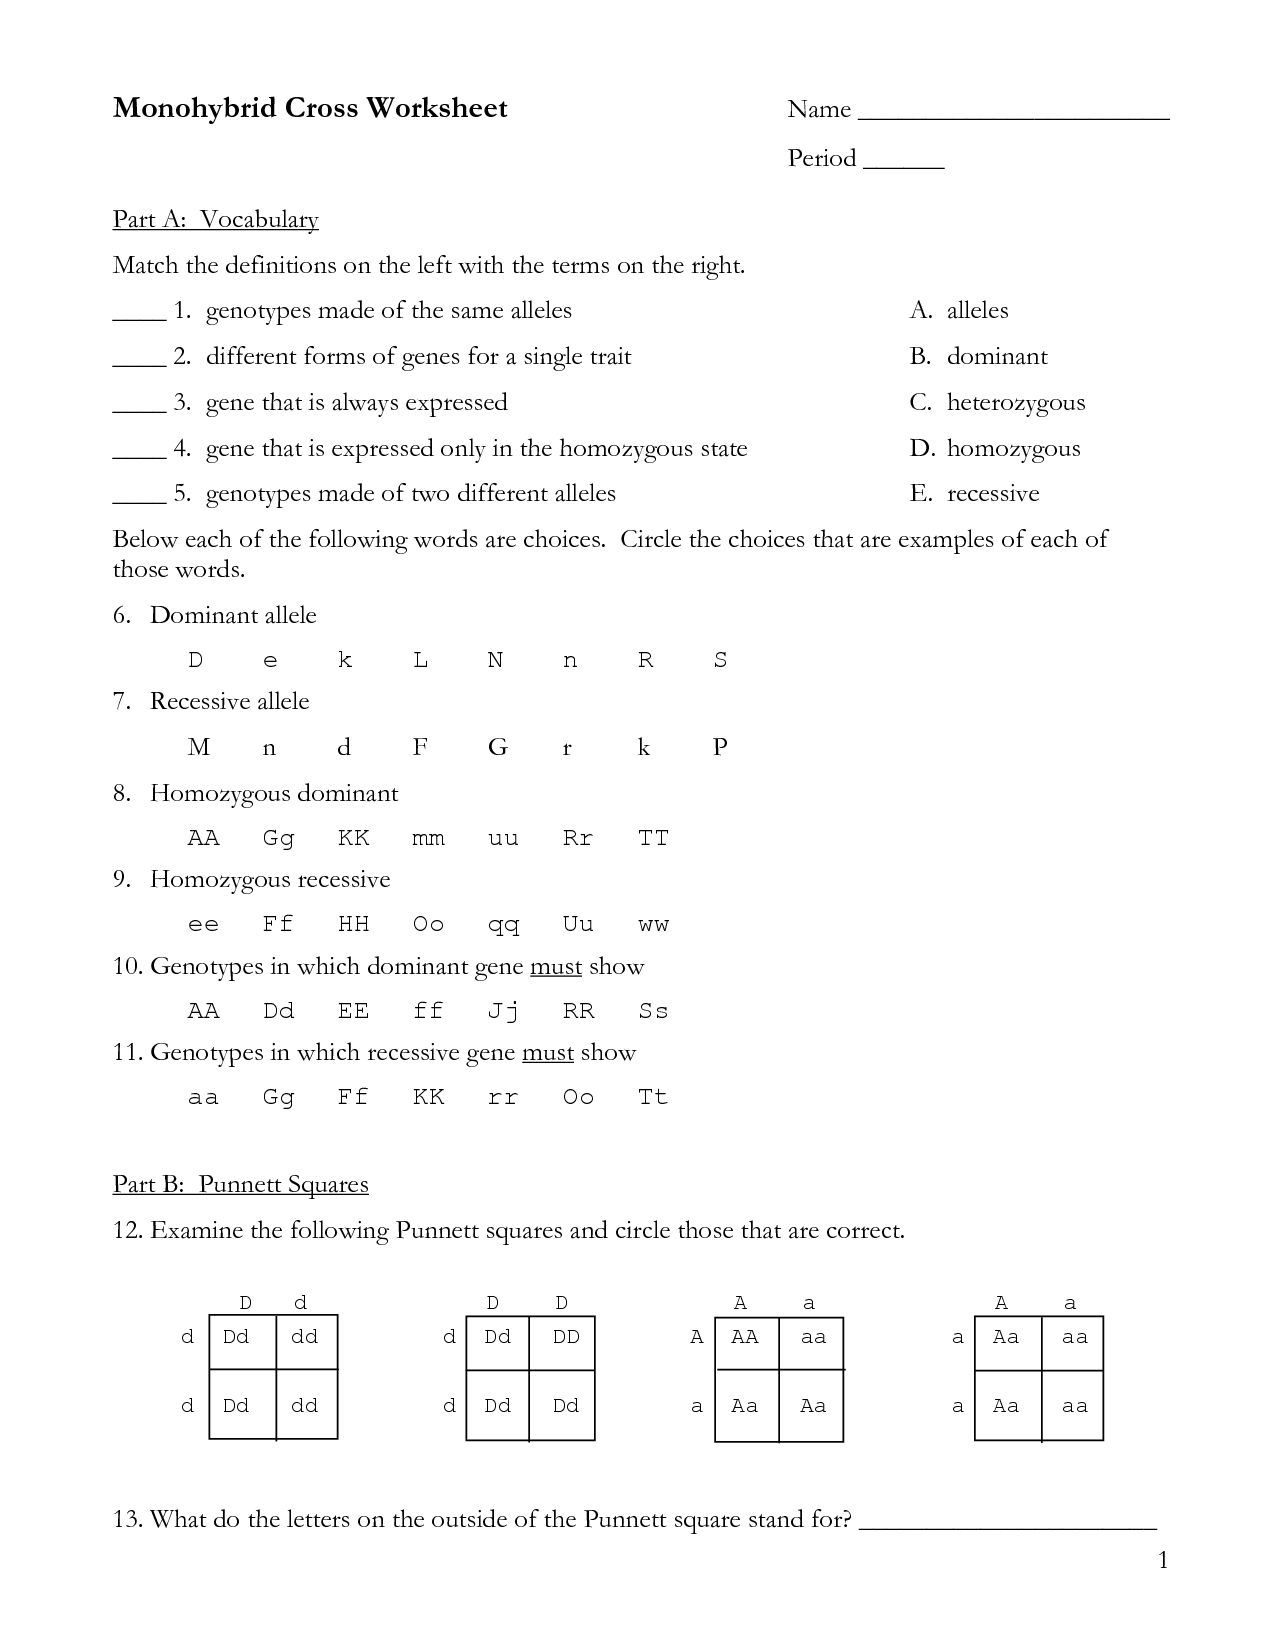 Monohybrid Cross Worksheet Answer Key Image